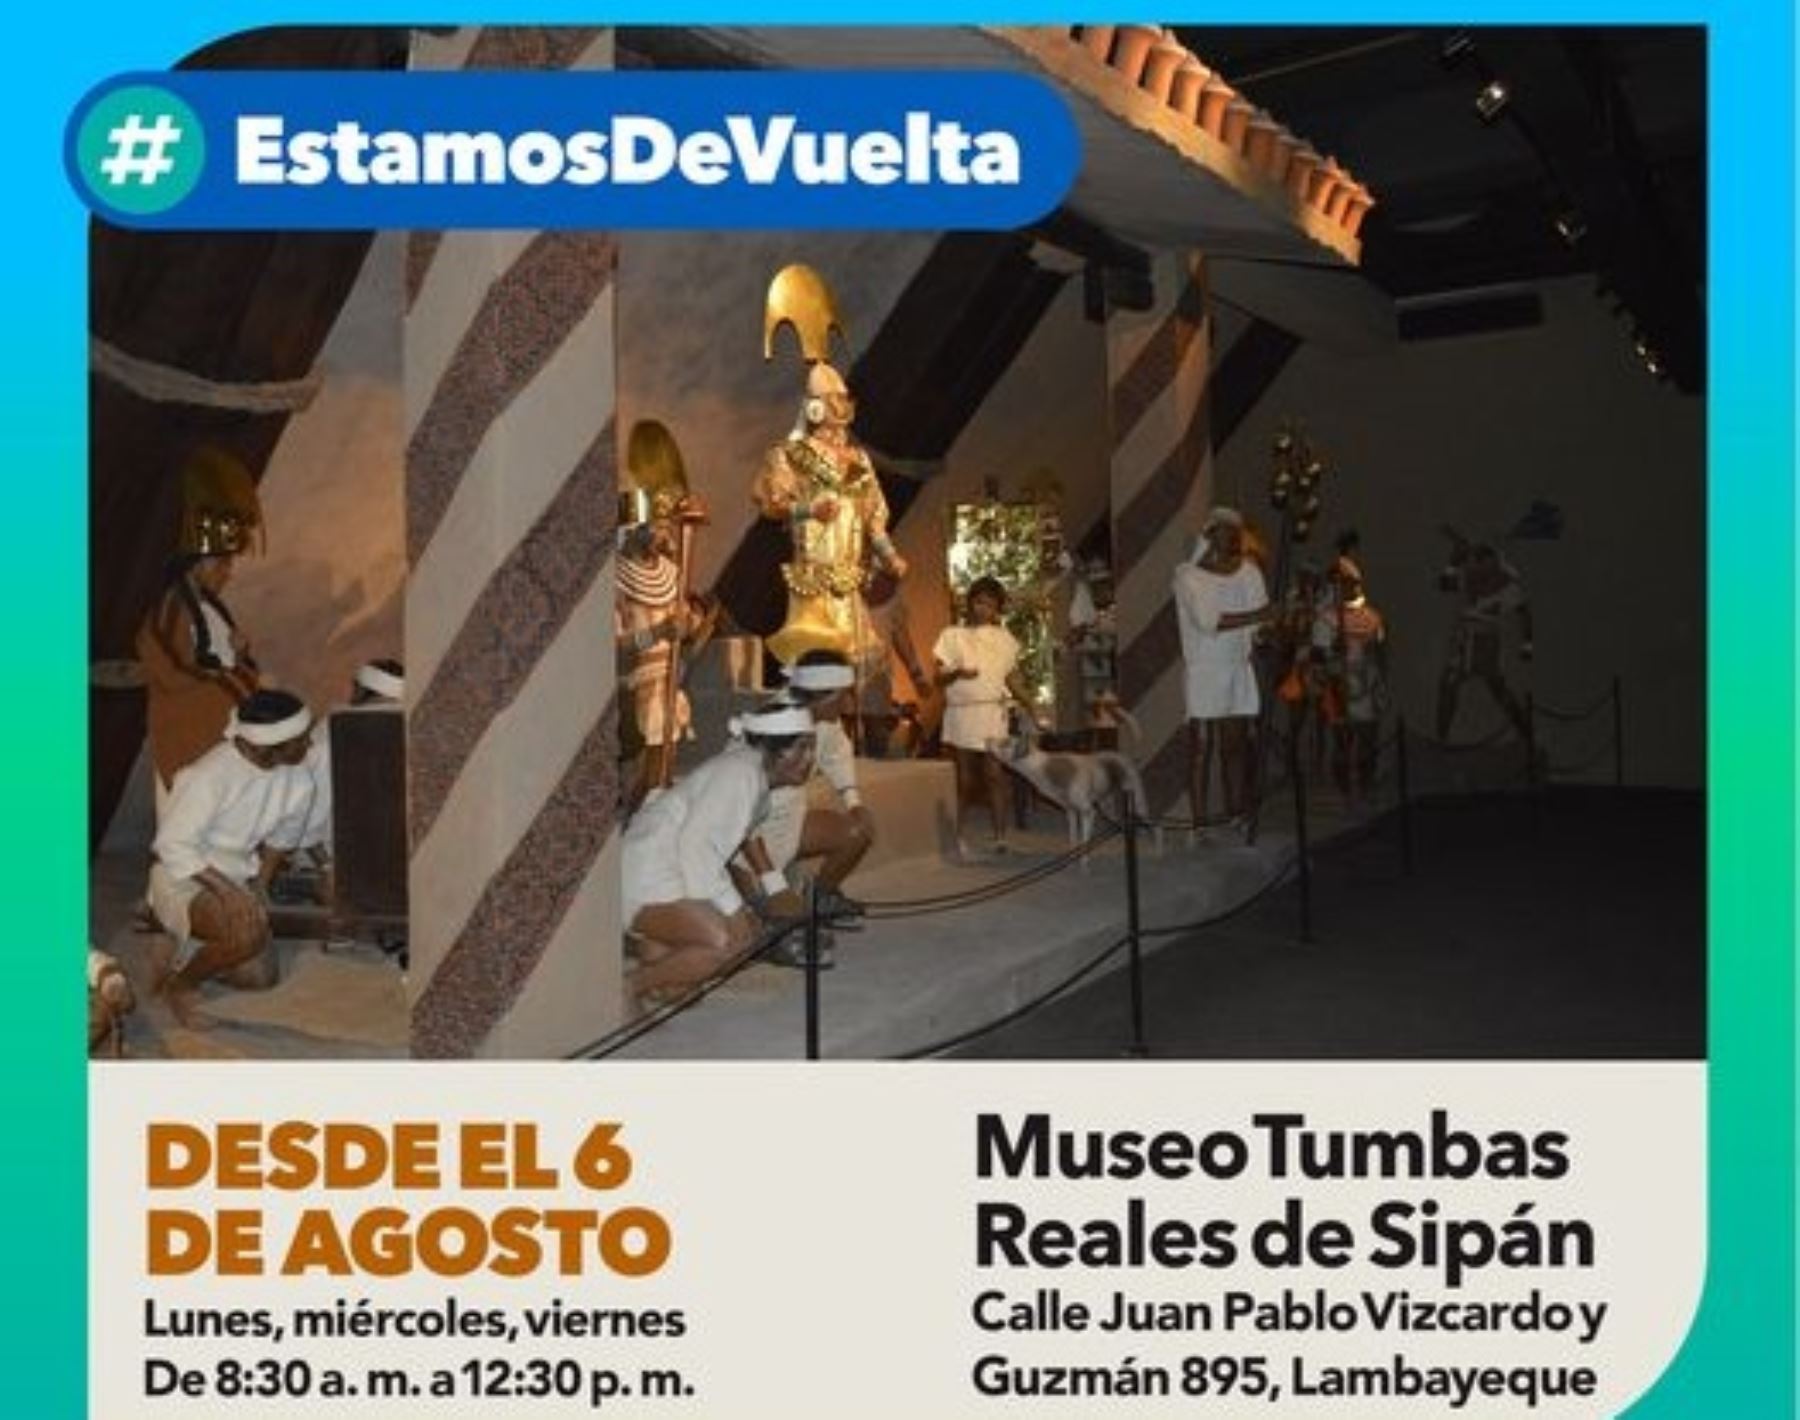 El embemático Museo Tumbas Reales de Sipán. ubicado en Lambayeque, reabre hoy. El recinto exhibe  los restos del Señor de Sipán y los ornamentos hallados en su cámara funeraria.